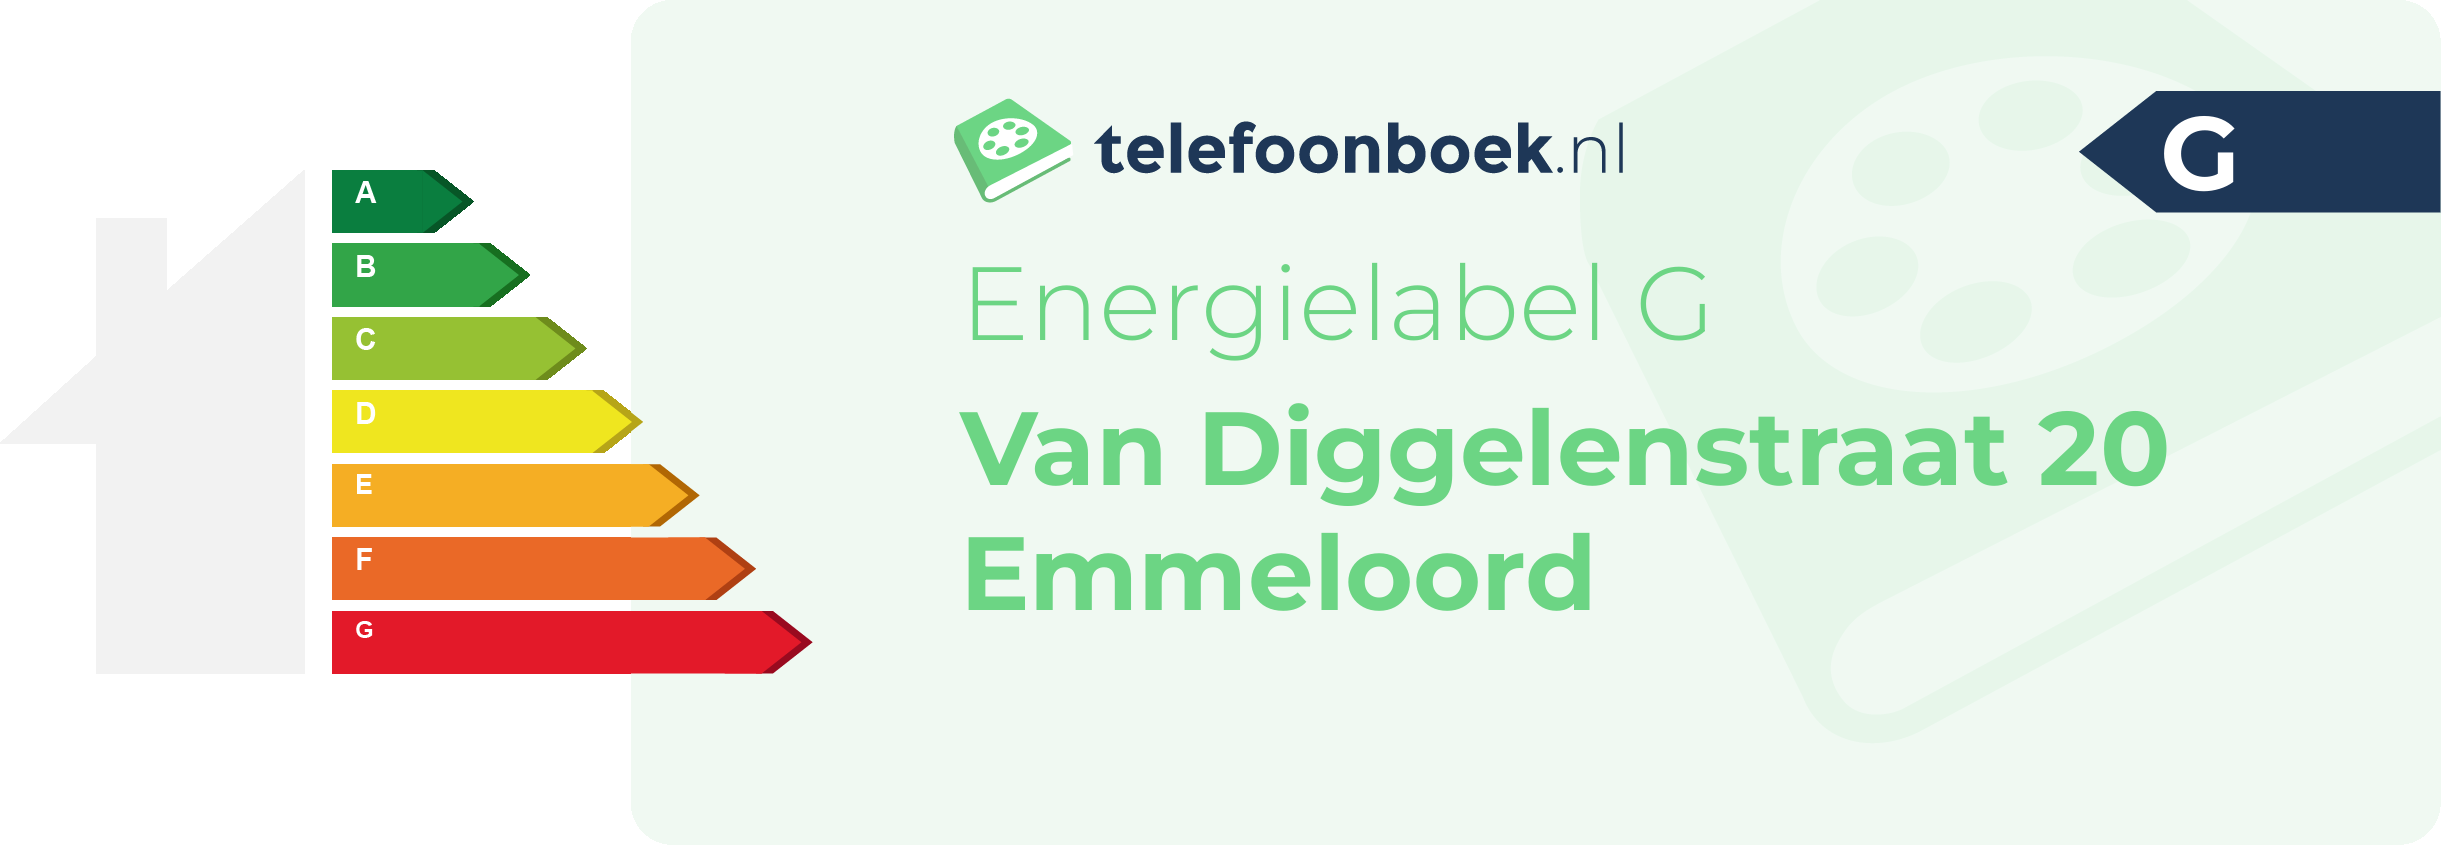 Energielabel Van Diggelenstraat 20 Emmeloord